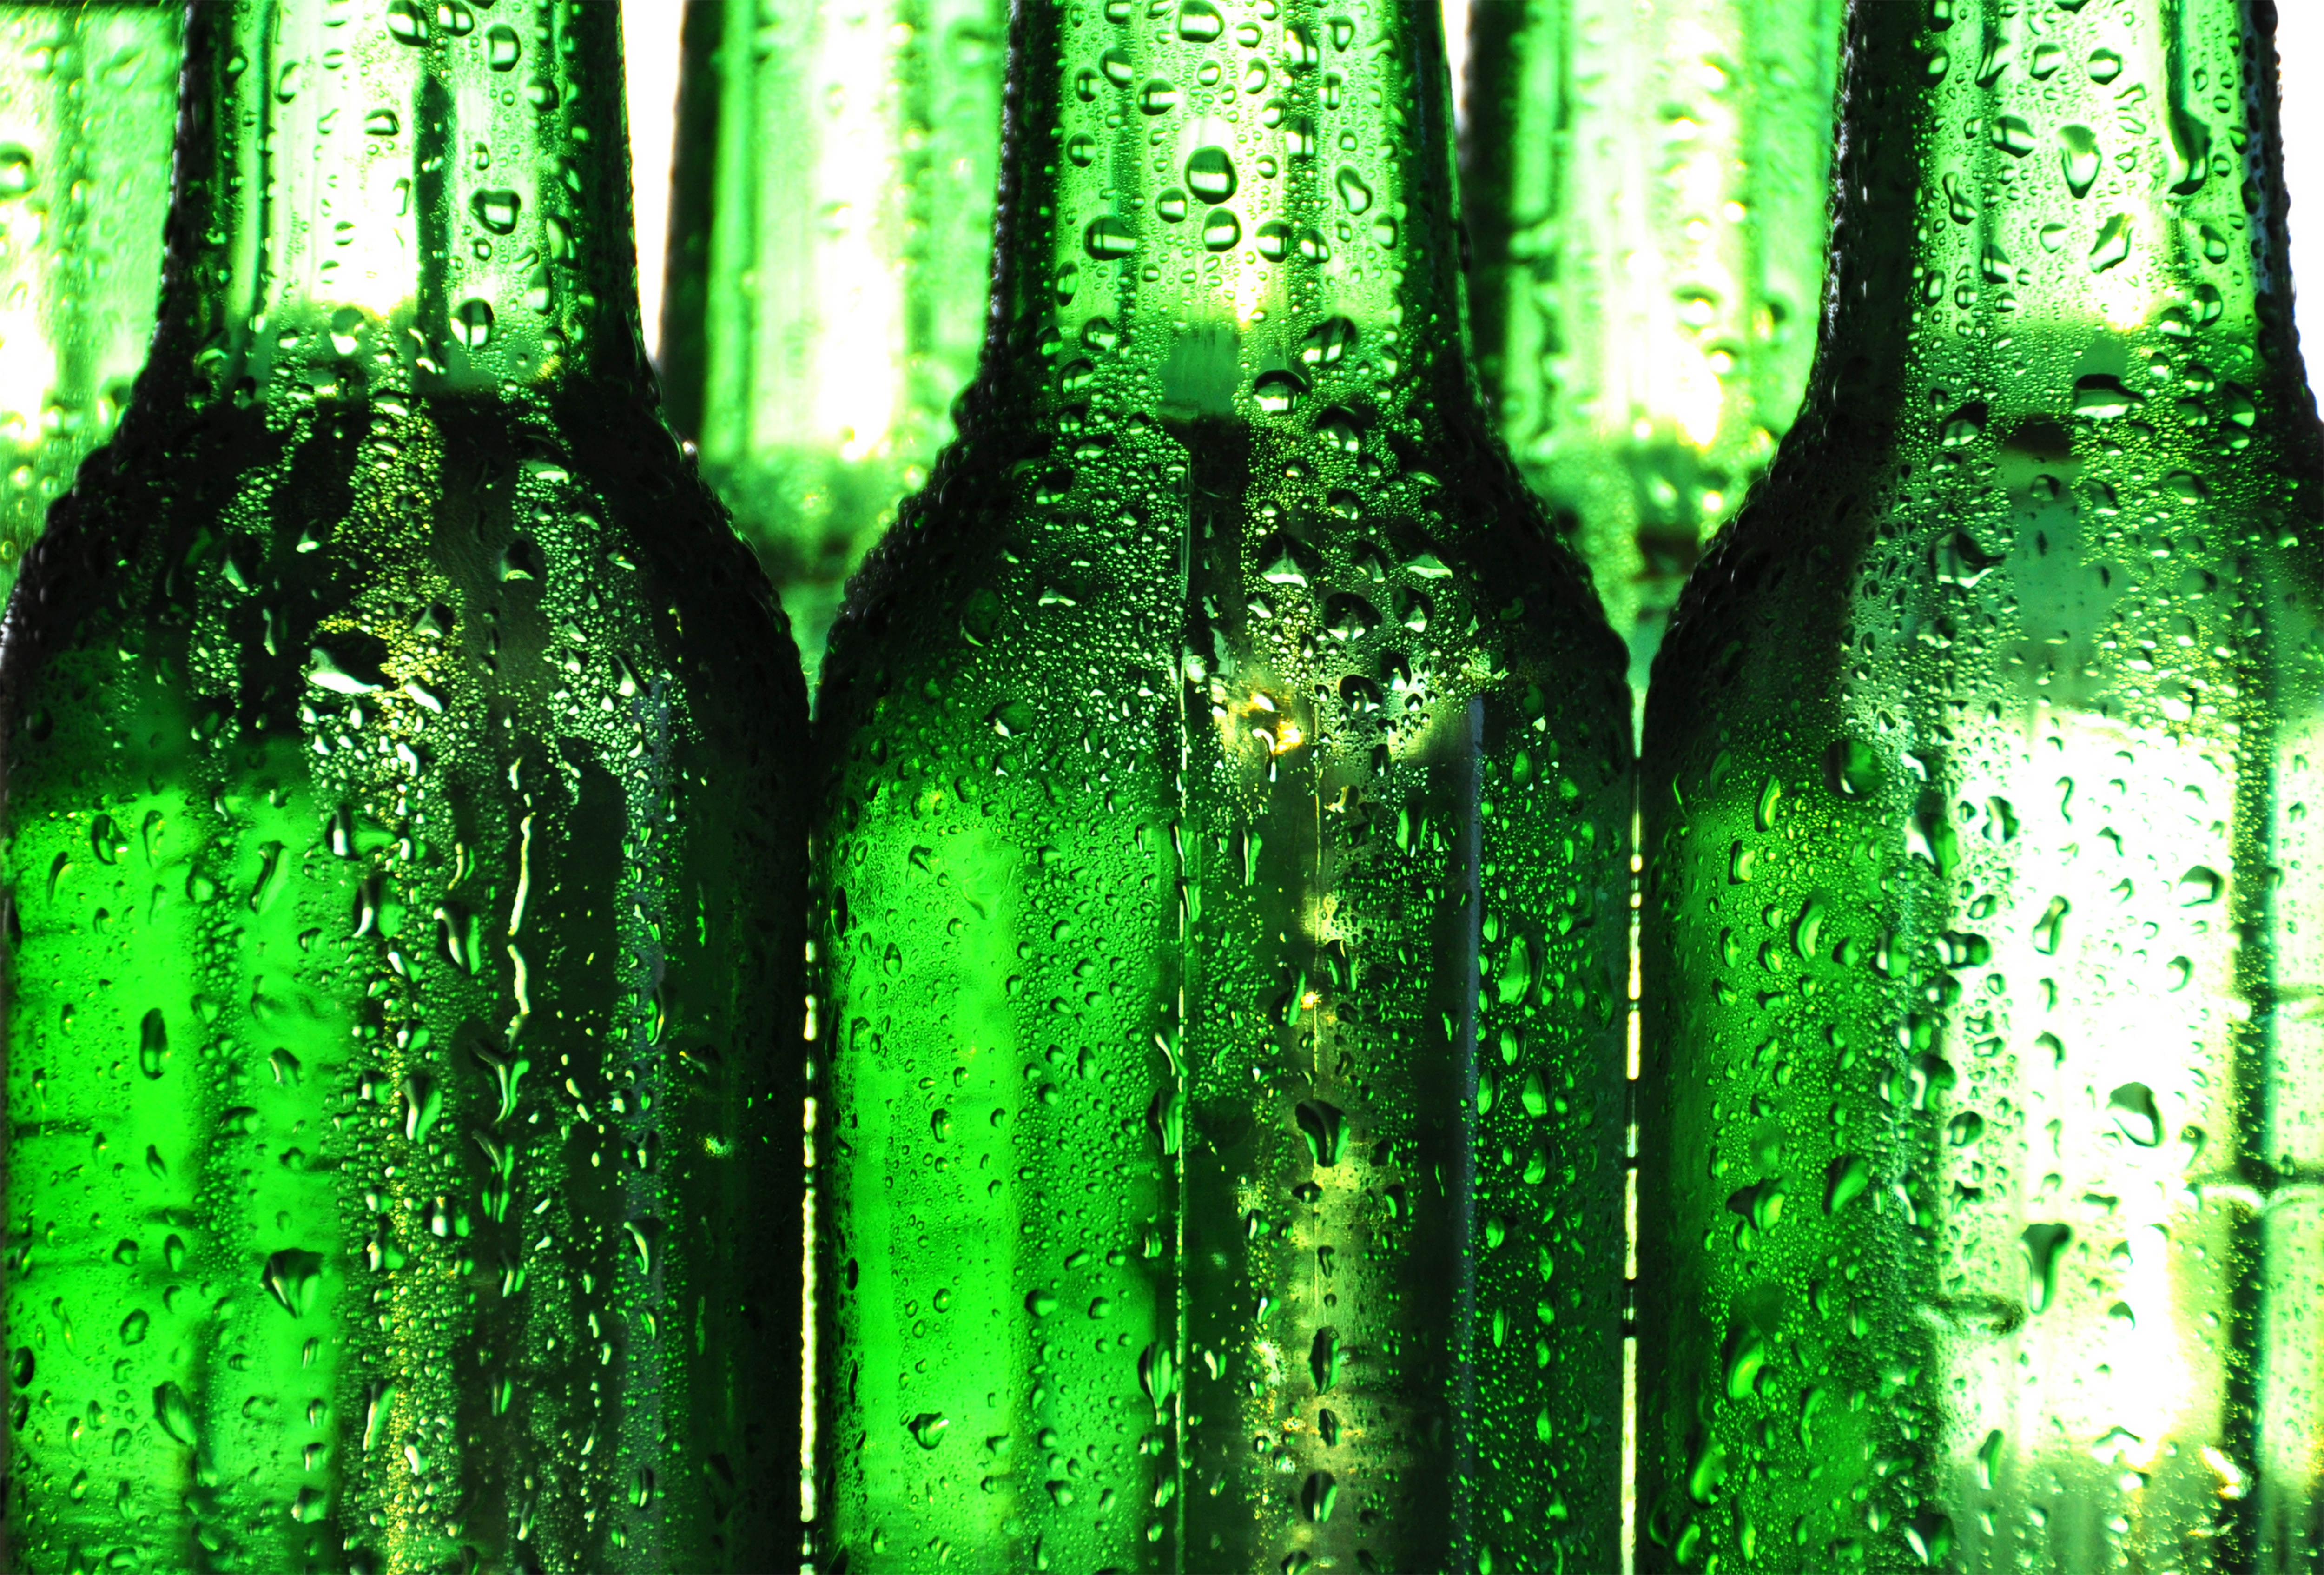 ボトルの壁紙,ボトル,ガラス瓶,緑,ビール瓶,ドリンク